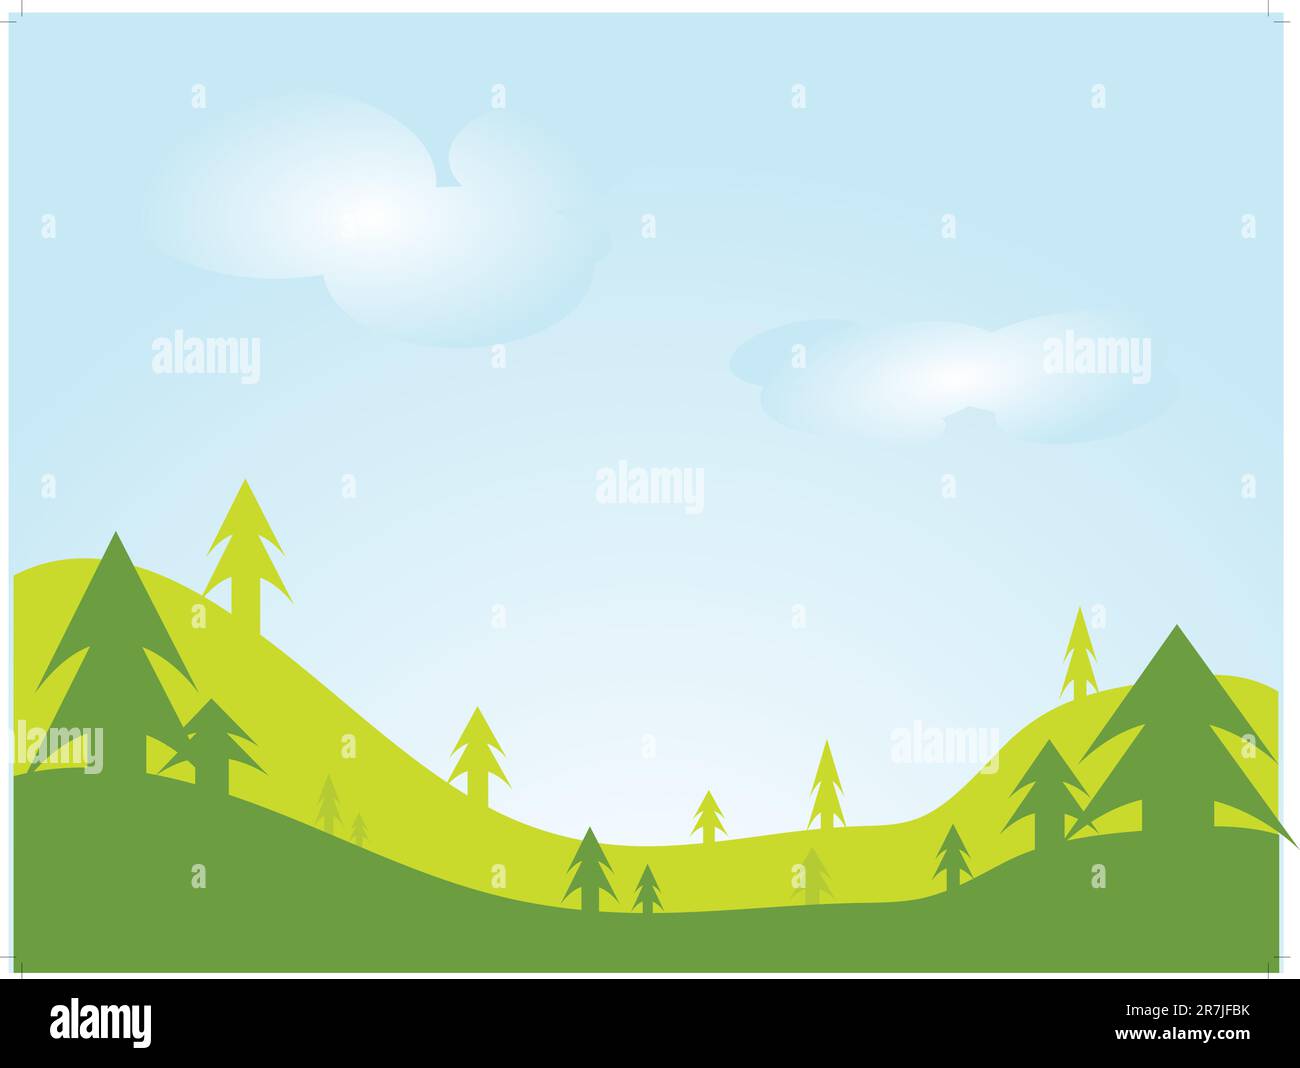 Illustrazione vettoriale di scene naturali colorate con nuvole bianche su paesaggi verdi e cielo blu. Illustrazione Vettoriale